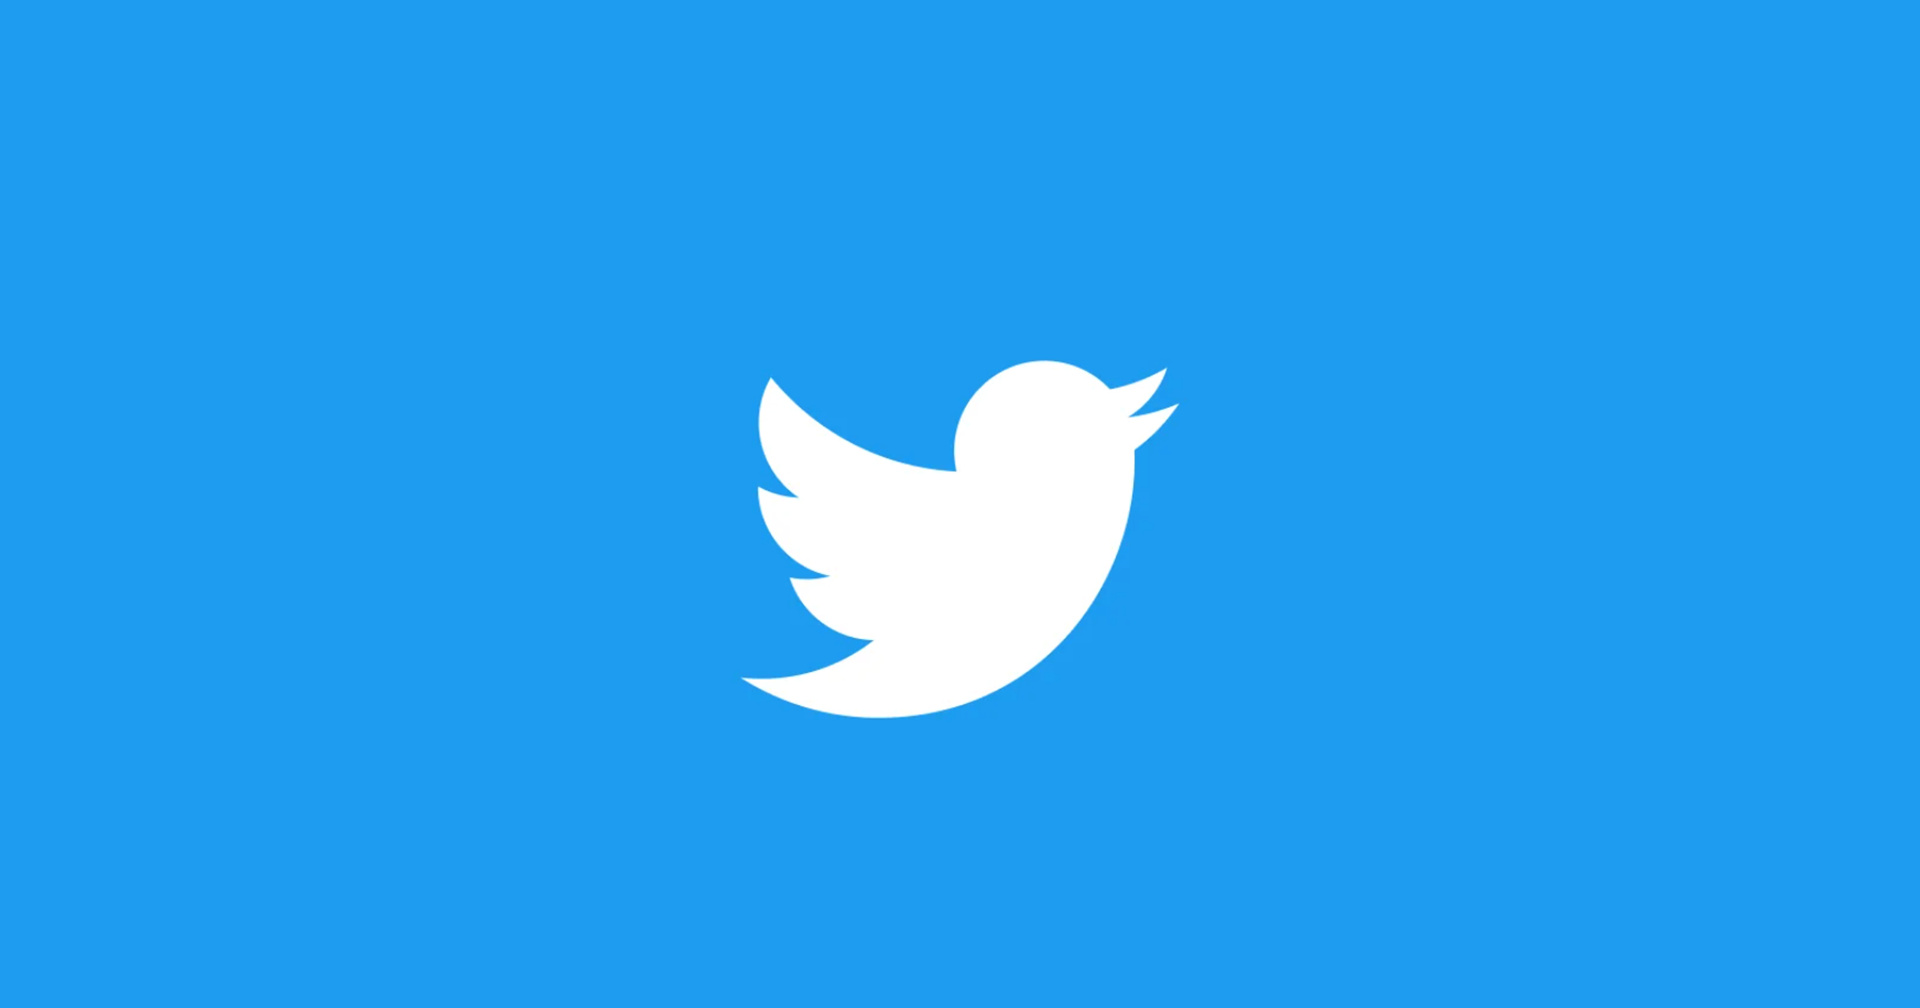 บริษัทเพลงดังฟ้อง Twitter ที่ปล่อยให้ผู้ใช้เผยแพร่เพลงแบบละเมิดลิขสิทธิ์